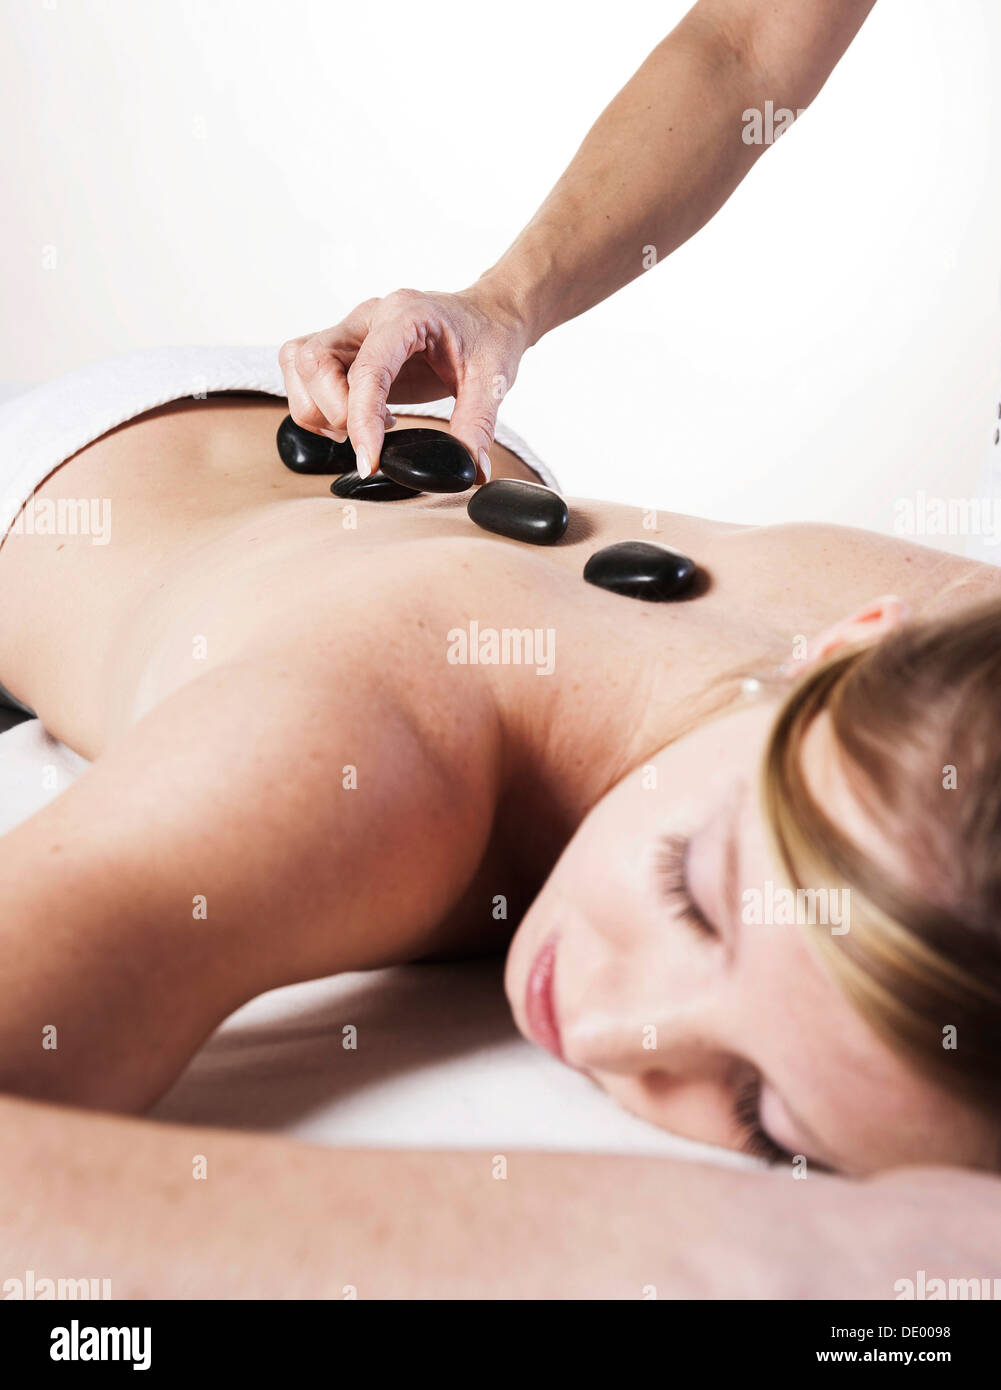 Jeune femme traitée avec pierres chaudes, massage aux pierres chaudes Banque D'Images